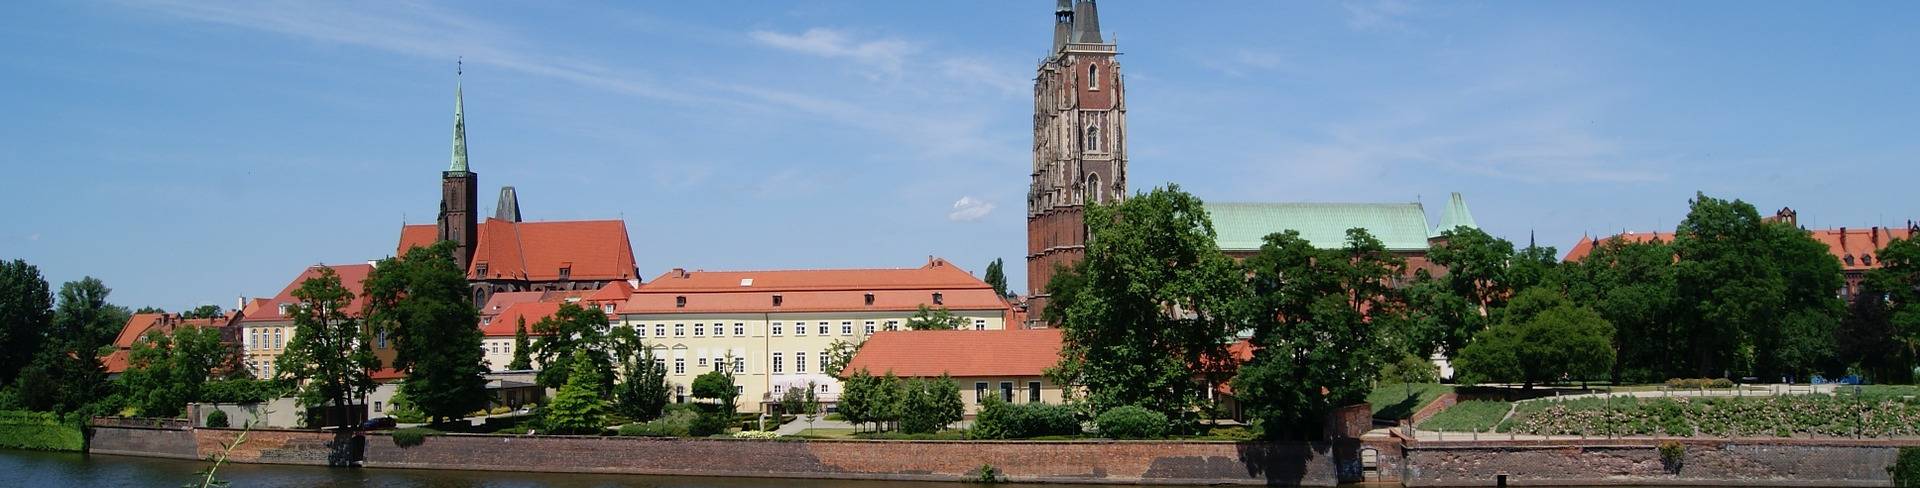 Вроцлав - город в Польше